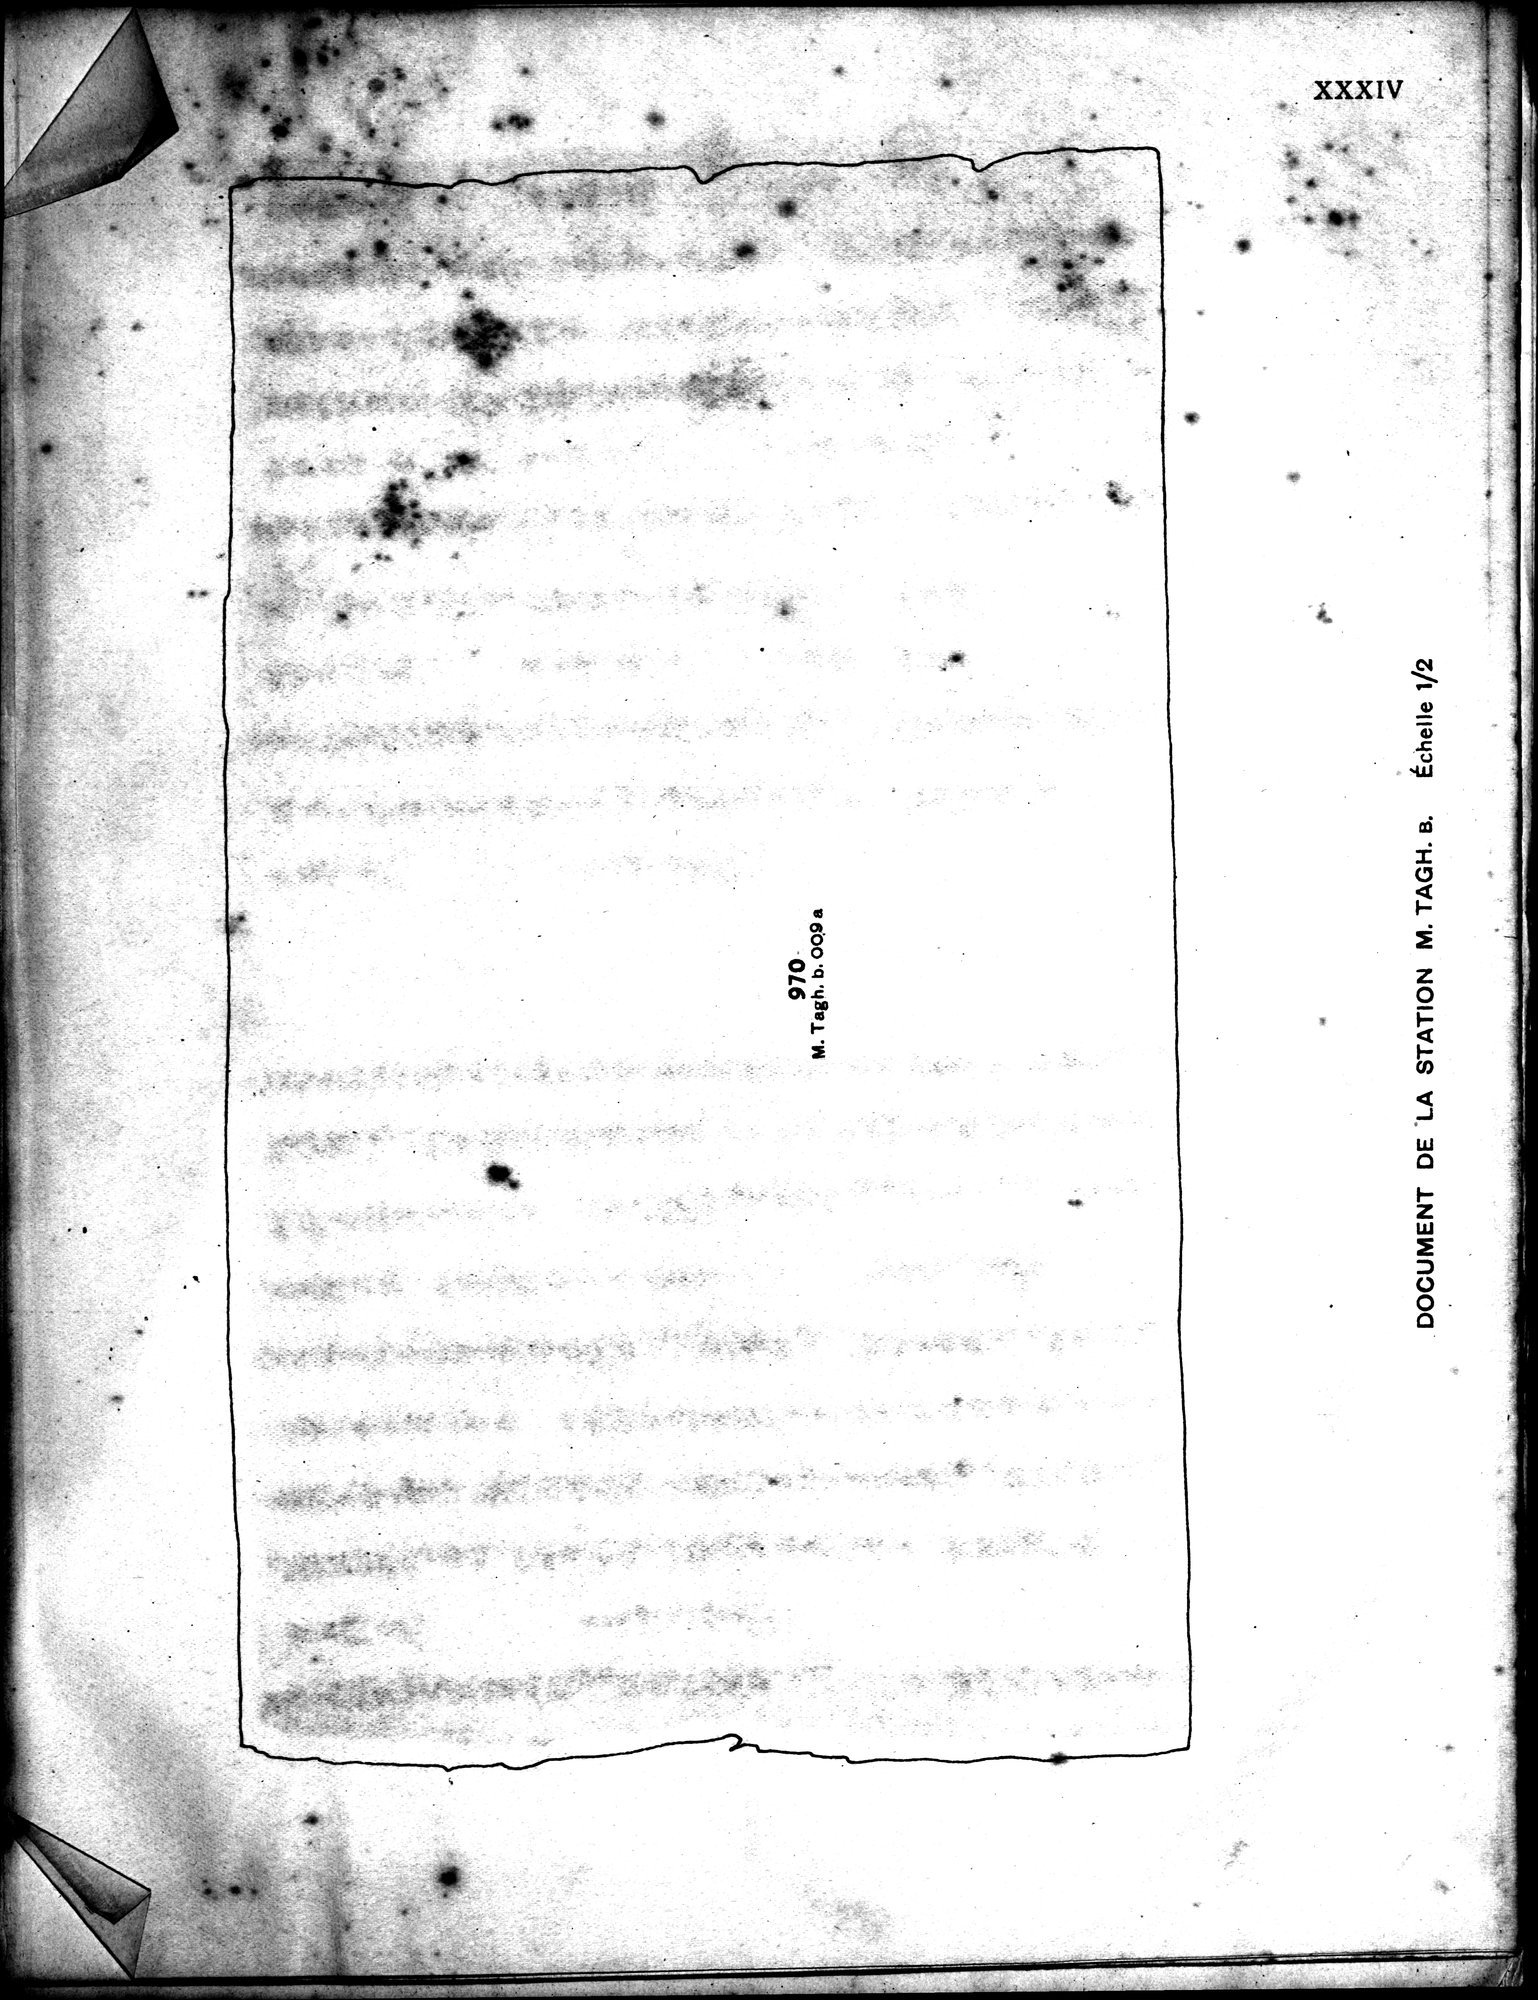 Les documents chinois découverts par Aurel Stein dans les sables du Turkestan Oriental : vol.1 / Page 401 (Grayscale High Resolution Image)